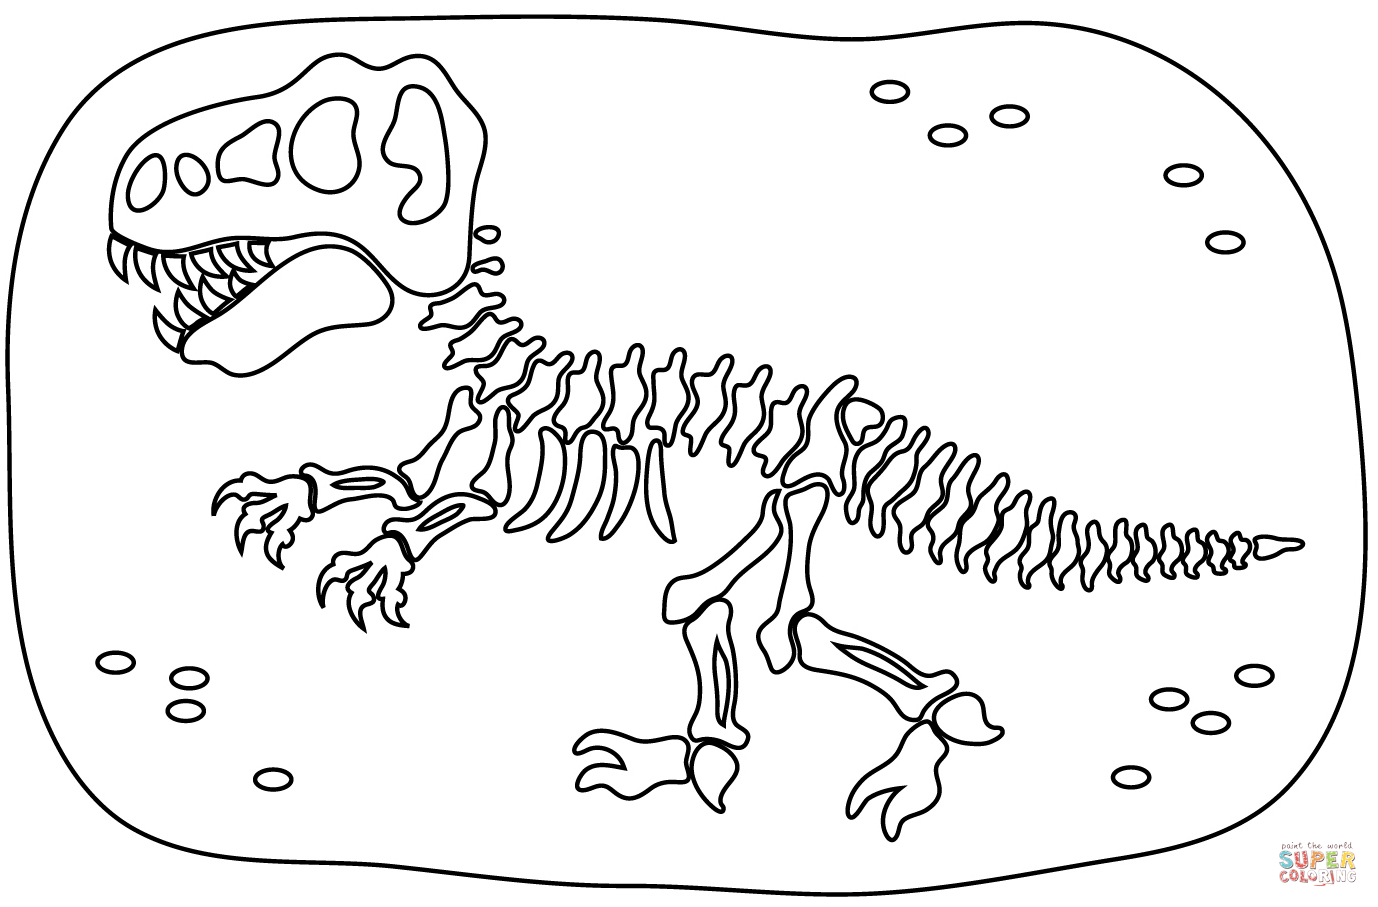 Dinosaur Fosil fargelegging